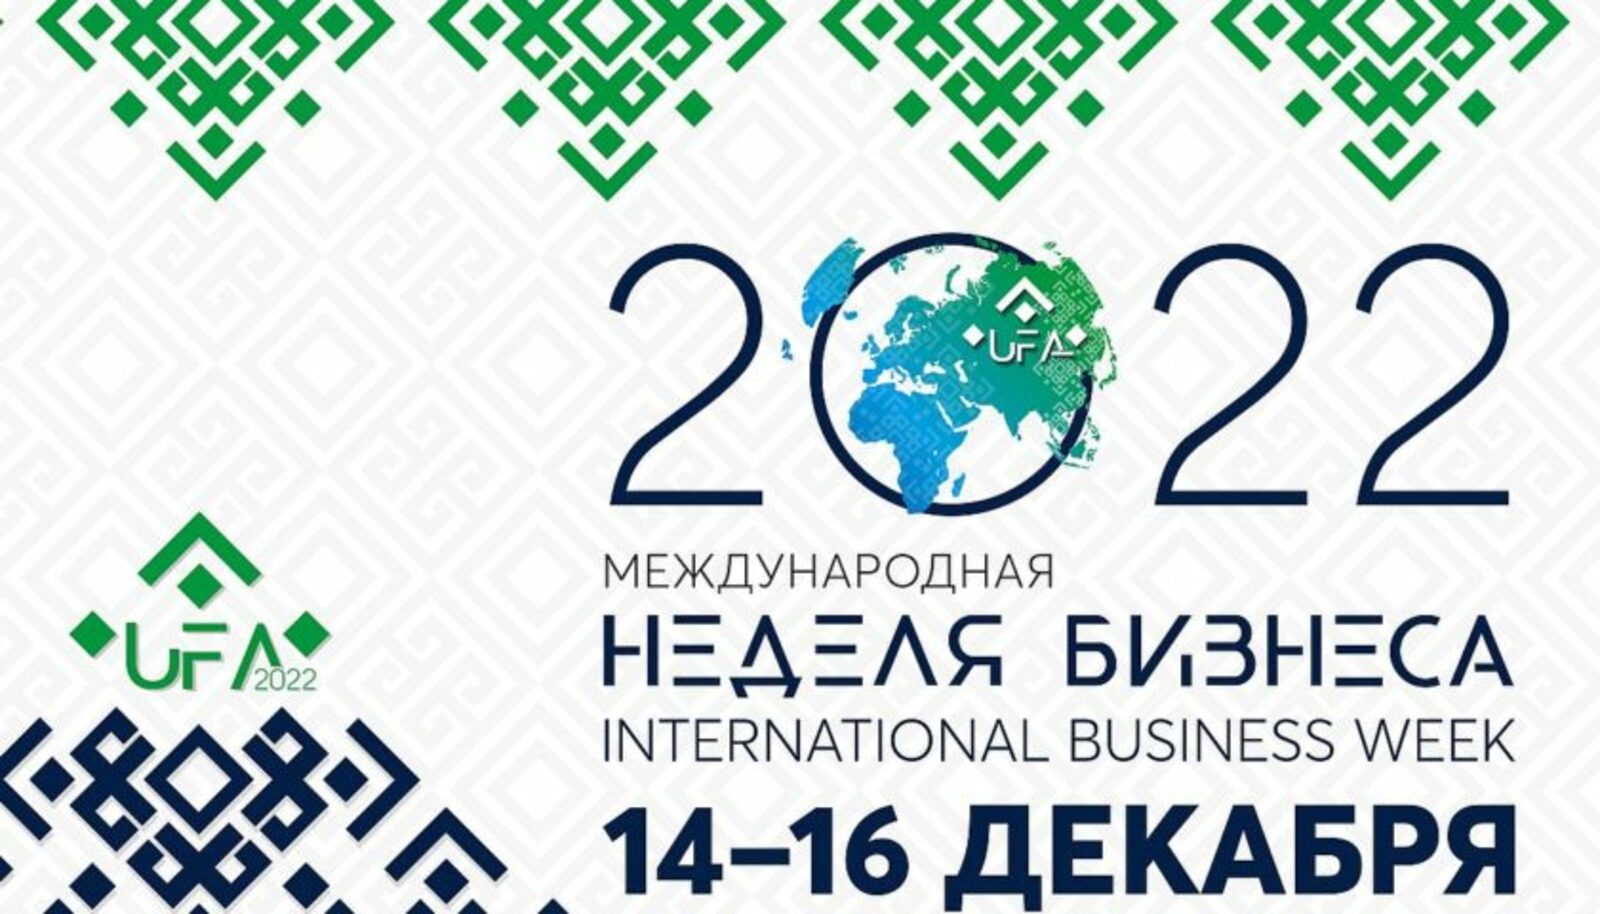 Опыт Башкортостана по организации госуслуг в режиме «одно окна» на базе офисов МФЦ представят в рамках Международной недели бизнеса